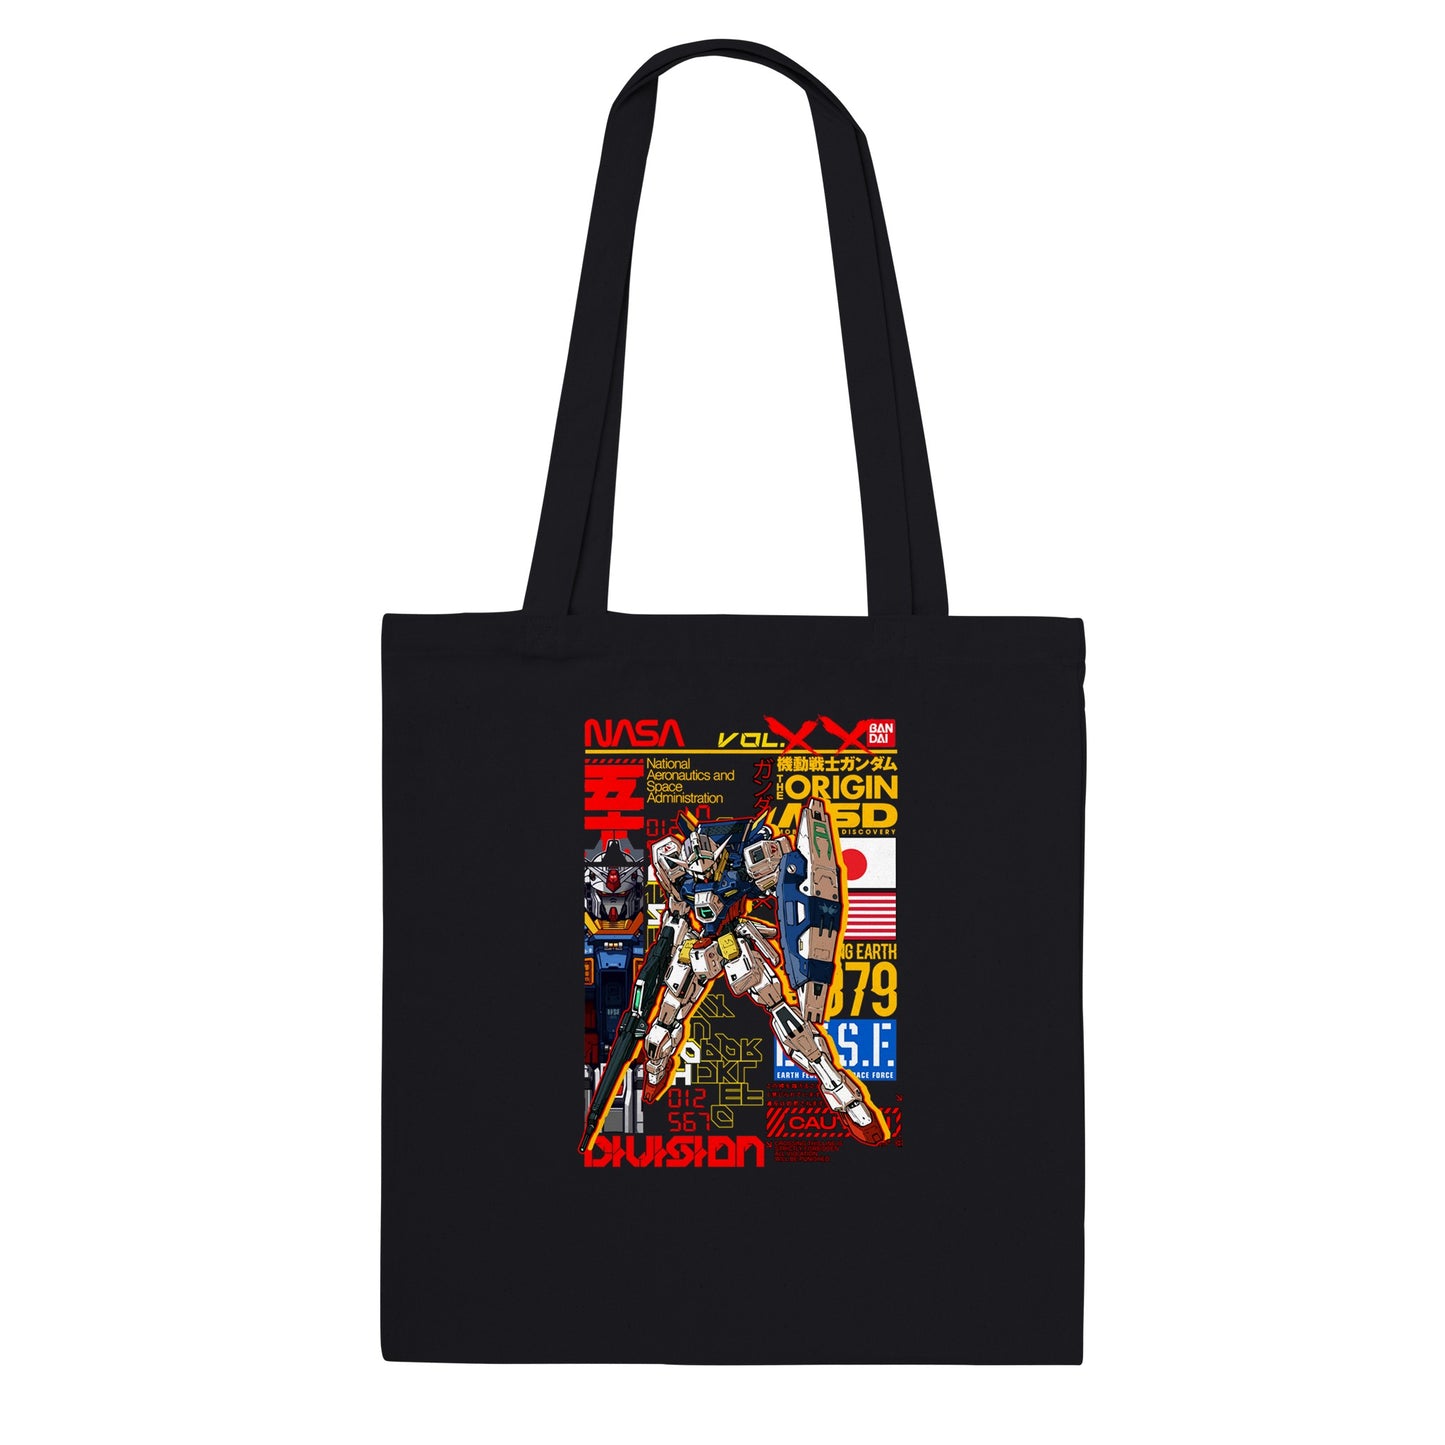 Gundam-Einkaufstasche – Gundam Artwork Vol 2 – Premium-Einkaufstasche